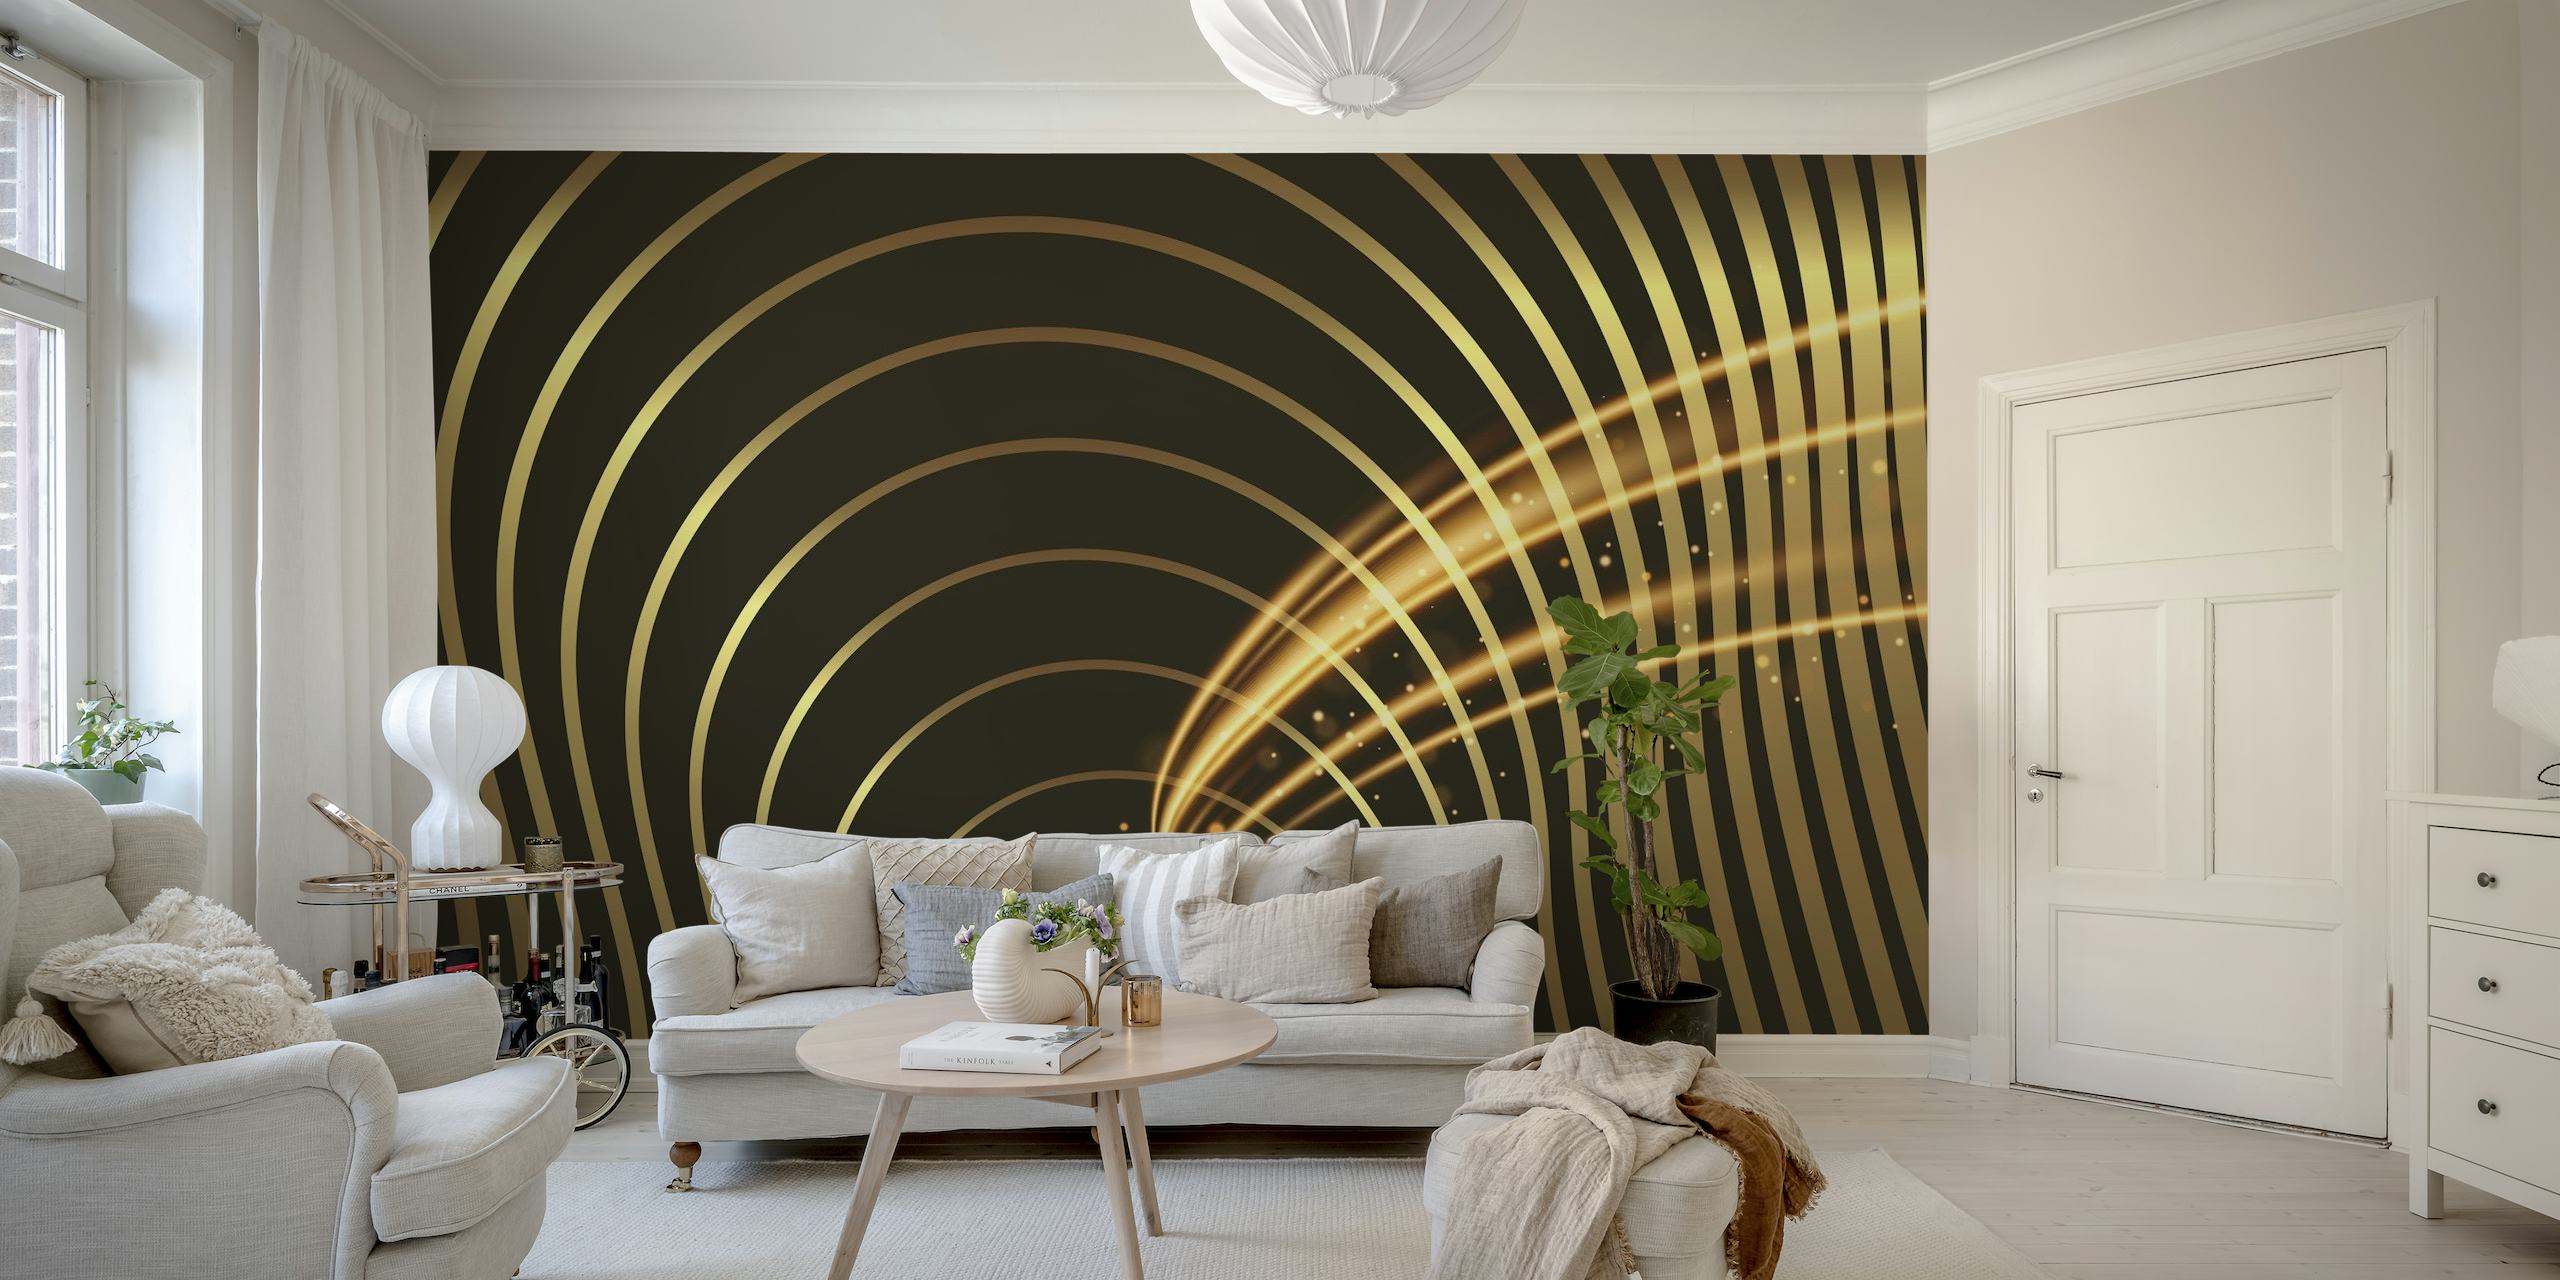 Dizajn zidnih murala sa zlatnim spiralama